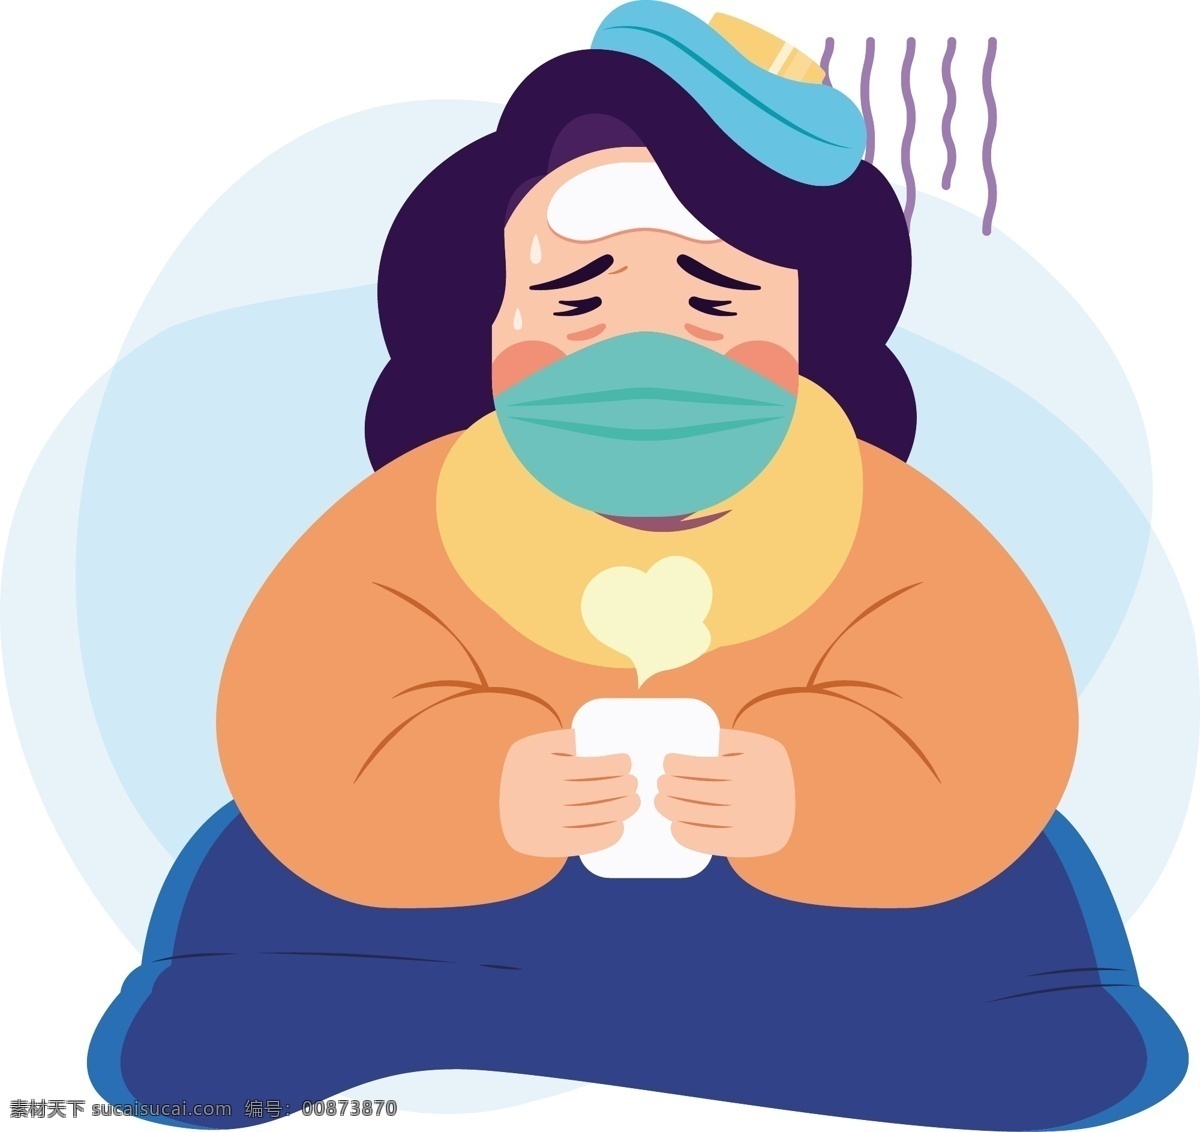 生病 感冒 发烧 咳嗽 肺炎 口罩 输液 预防 治疗 刷牙 喝汤 照顾病人 武汉 护士 矢量素材